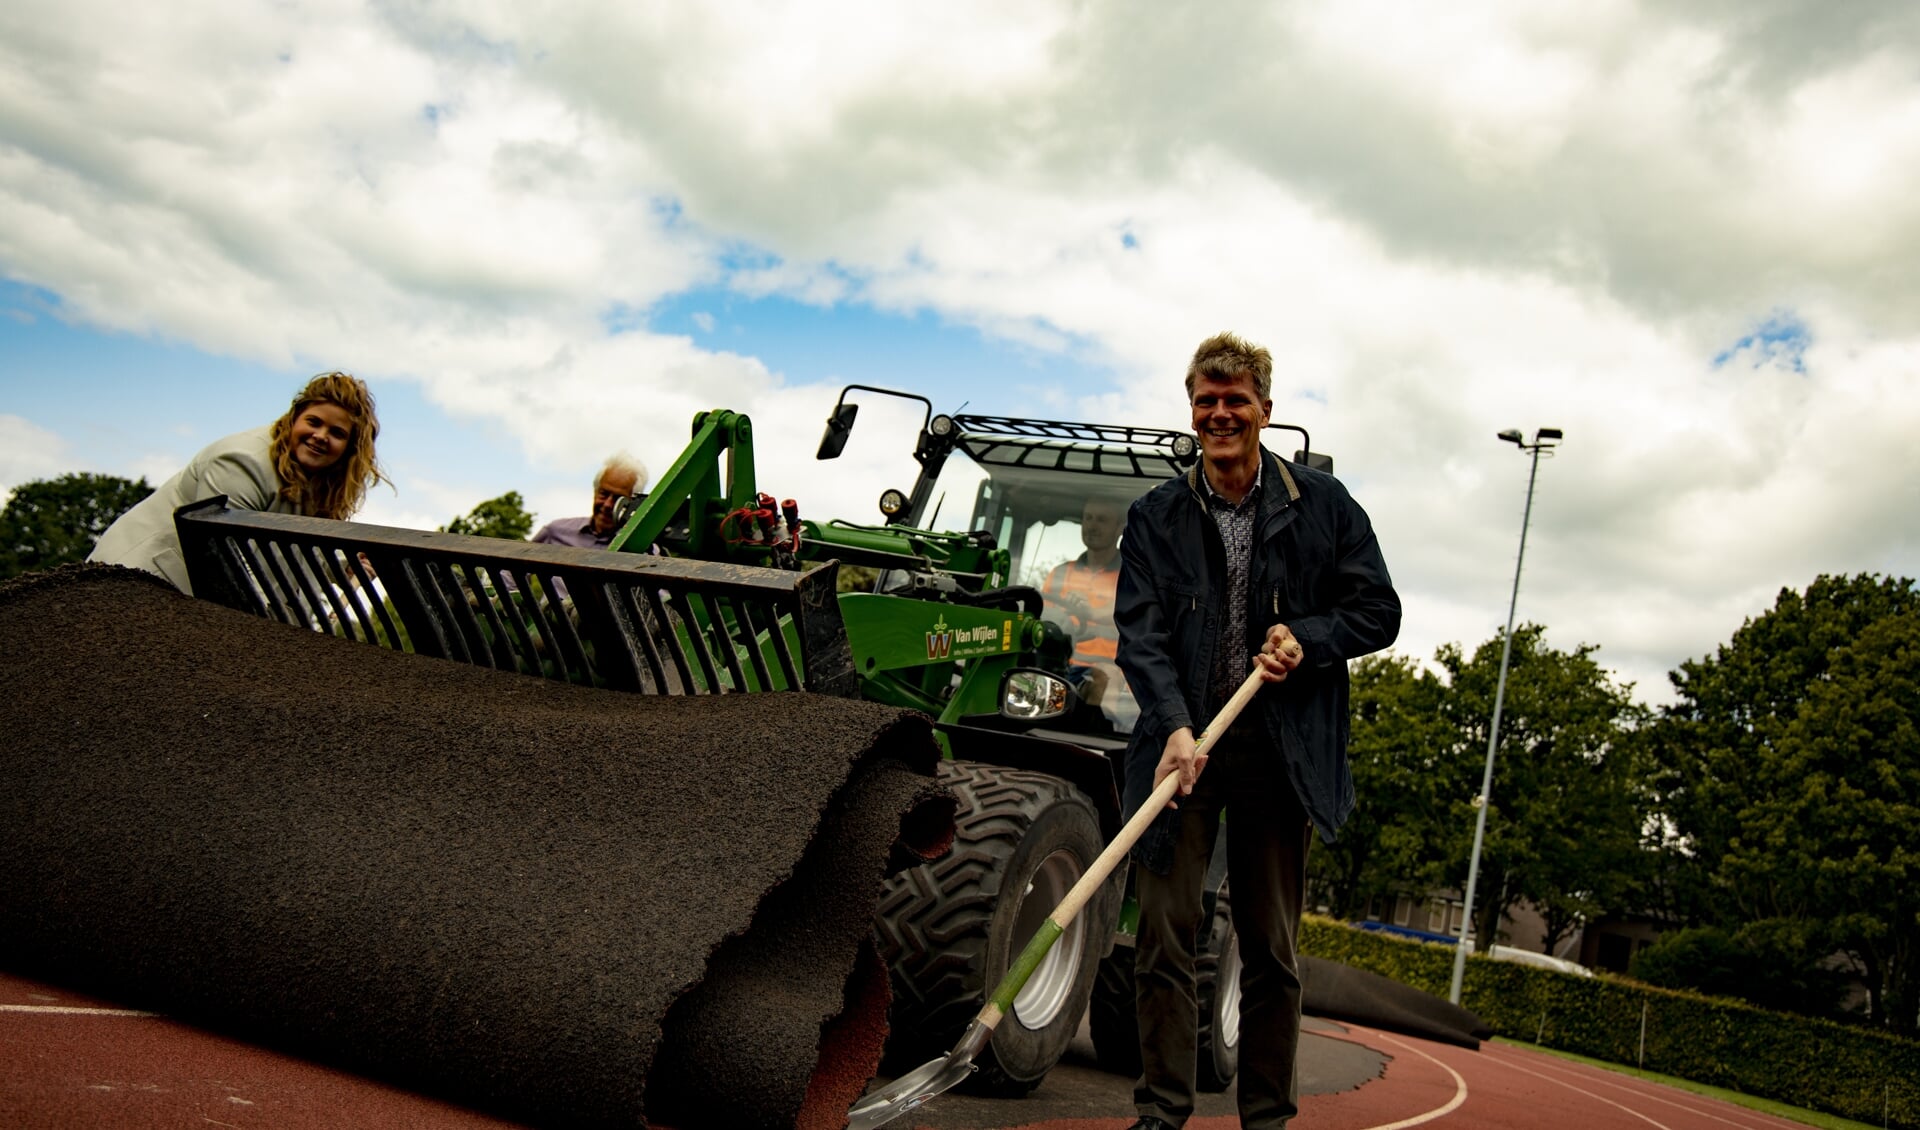 De wethouder Anne Thielen en Jan Loonen zetten maandag de renovatie van de atletiekbaan in gang. 